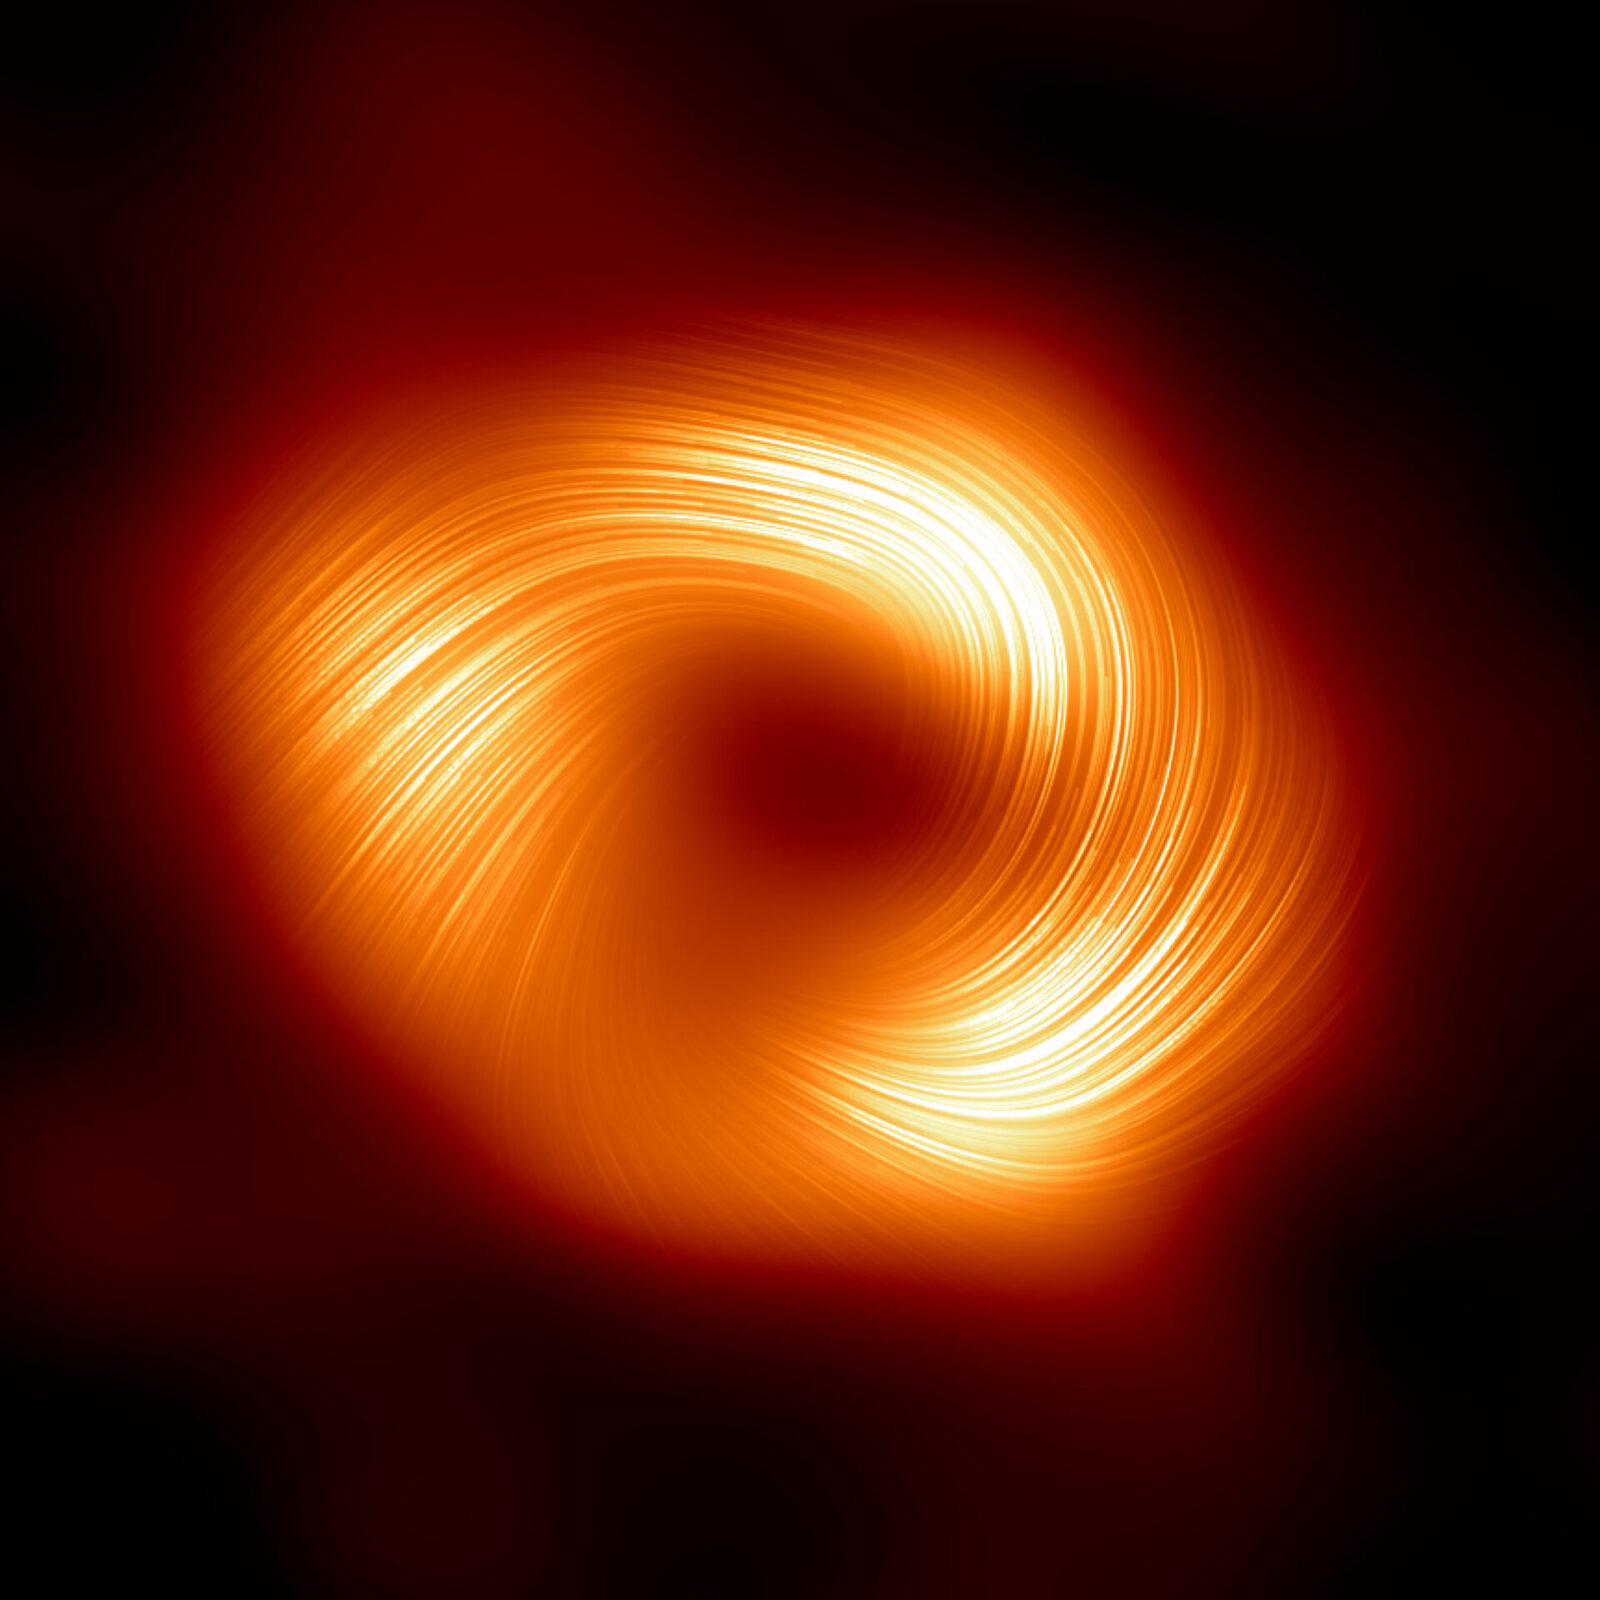 Vista polarizada del agujero negro supermasivo Sagitario A* de la Vía Láctea